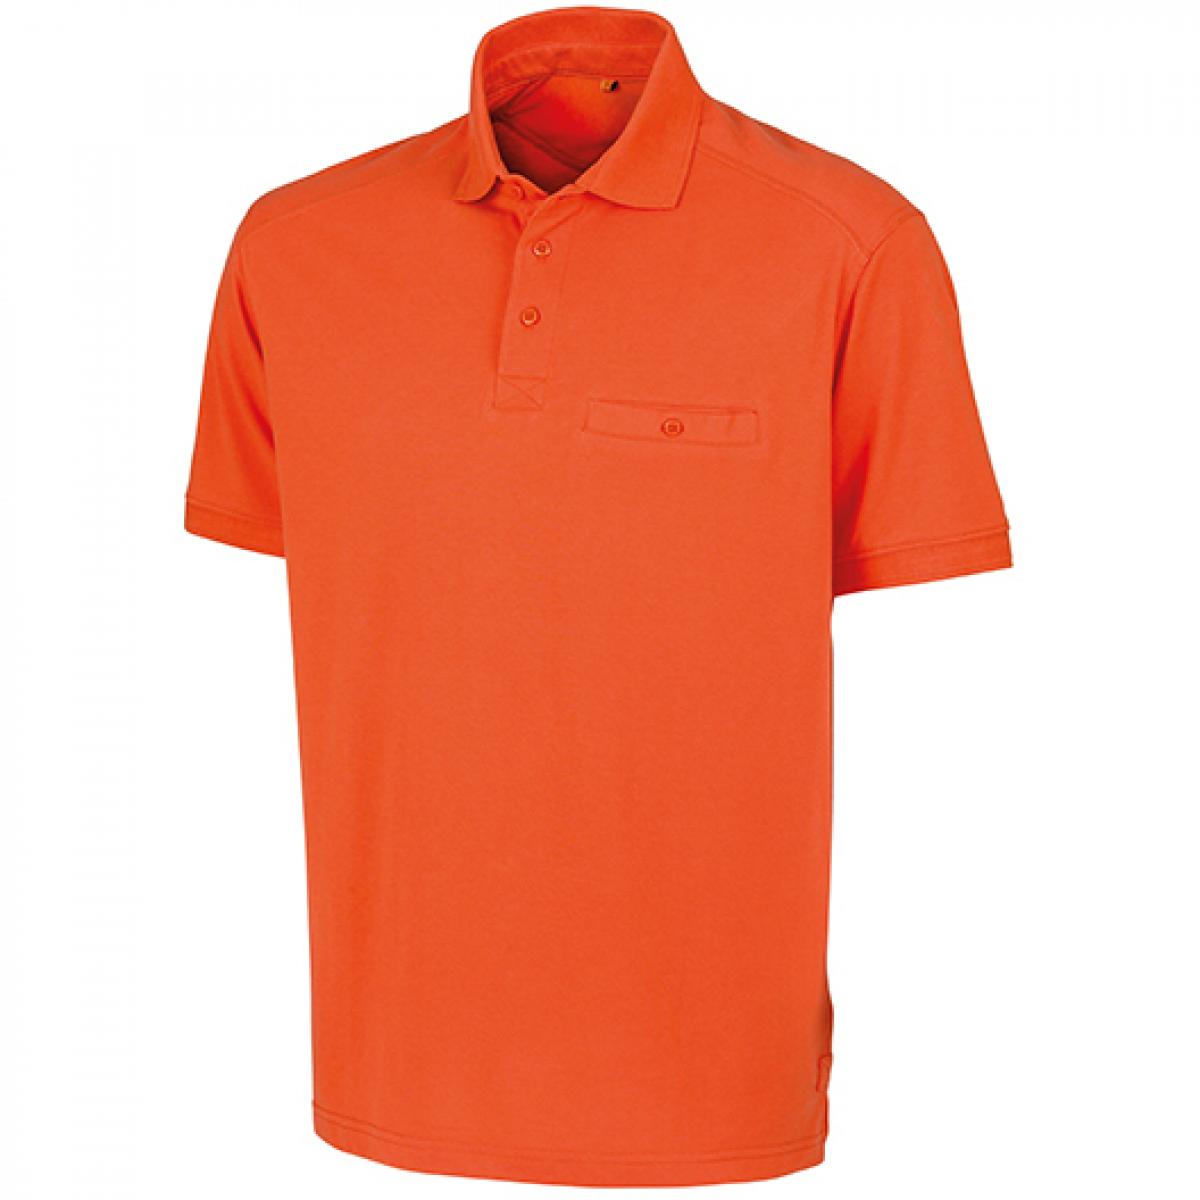 Hersteller: Result WORK-GUARD Herstellernummer: R312X Artikelbezeichnung: Herren Apex Polo Shirt / Strapazierfähig aus Mischgewebe Farbe: Orange